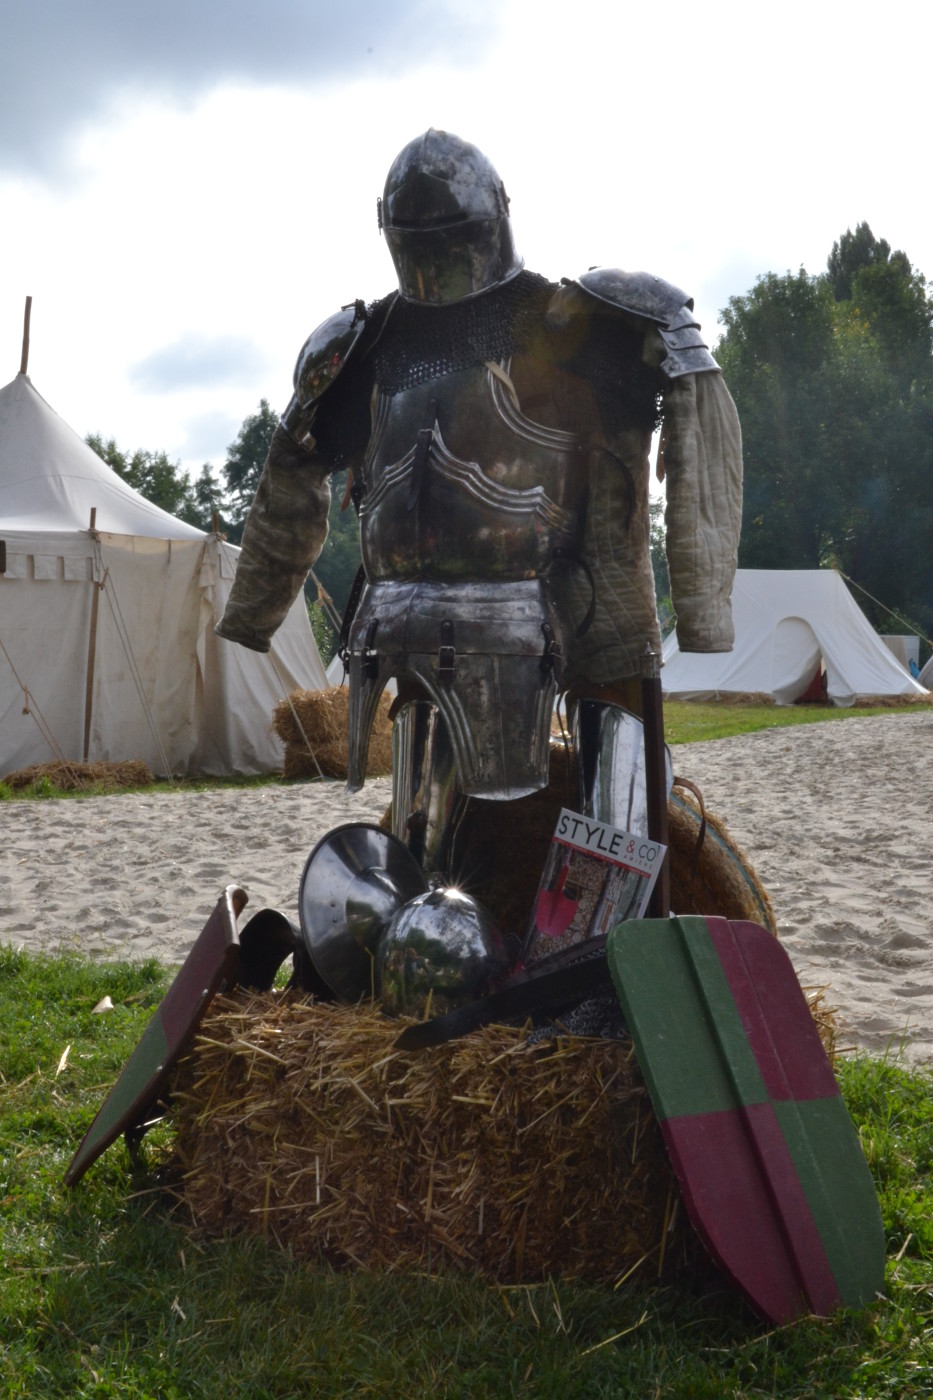 L'équipement complet du preux chevalier... Amiens, fête sur l'eau